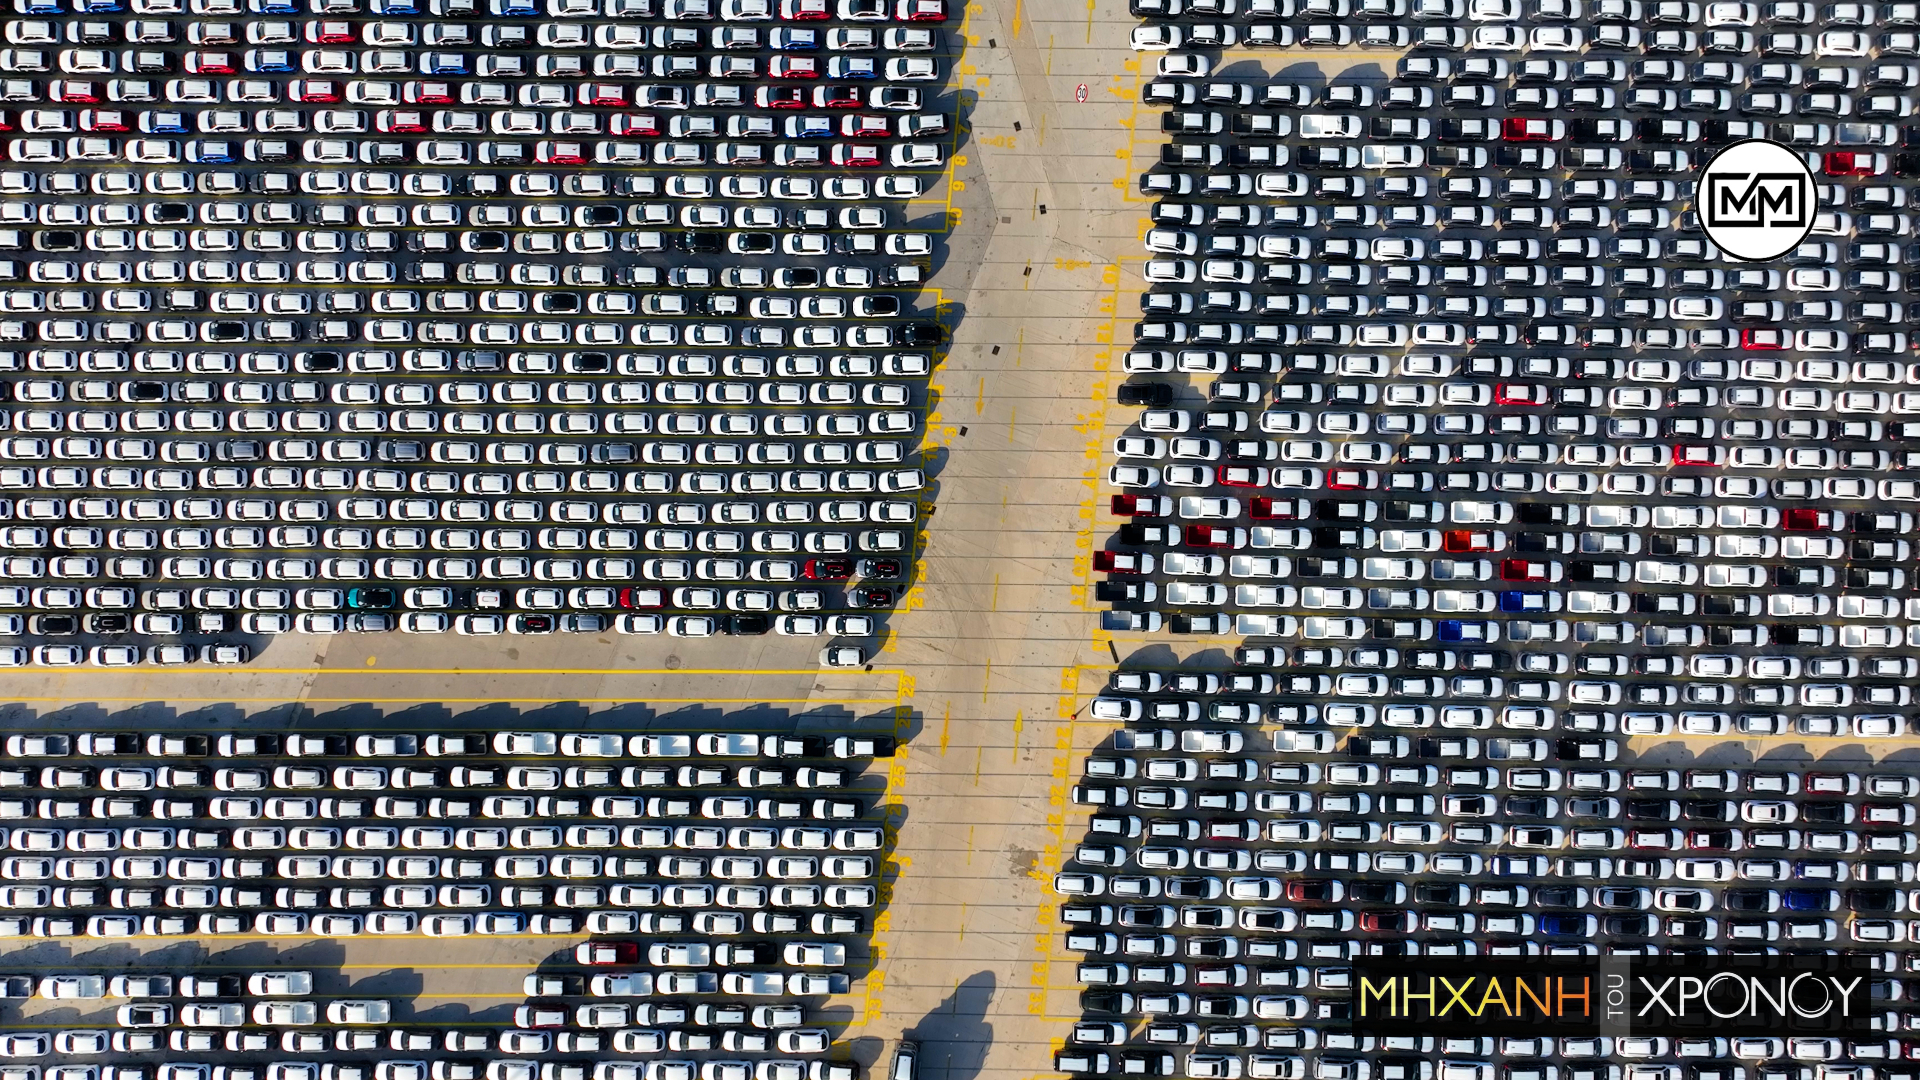 Πού βρίσκονται τα χιλιάδες αυτοκίνητα που “περιμένουν” να εκτελωνιστούν. Οι μεγάλες αναμονές και ο εφιάλτης του κυκλοφοριακού